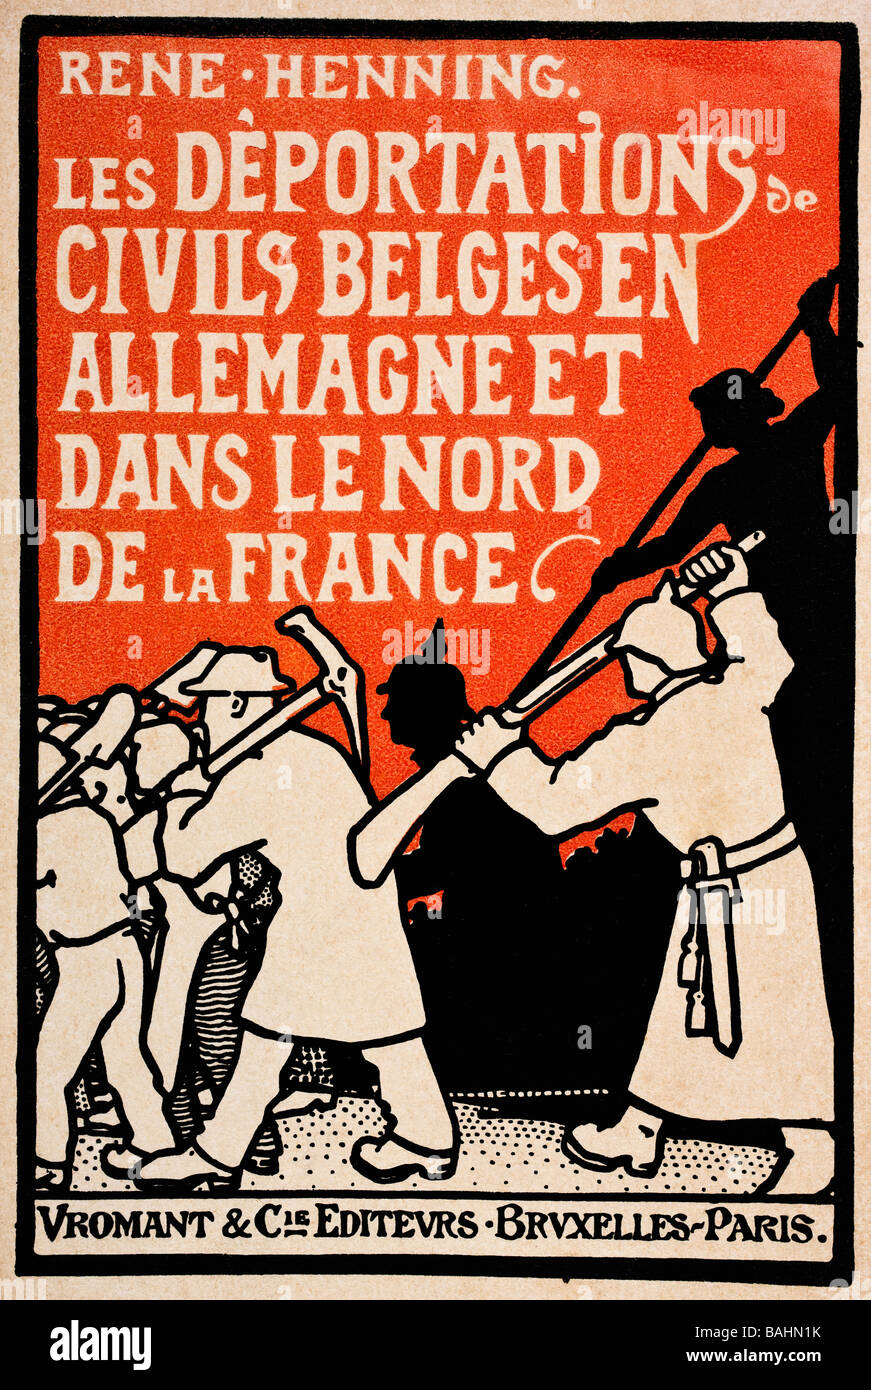 Portada del libro de 1919 Les deportaciones de Ingeniería Civil Belges en Allemagne et dans le Nord de la France por René Henning Foto de stock